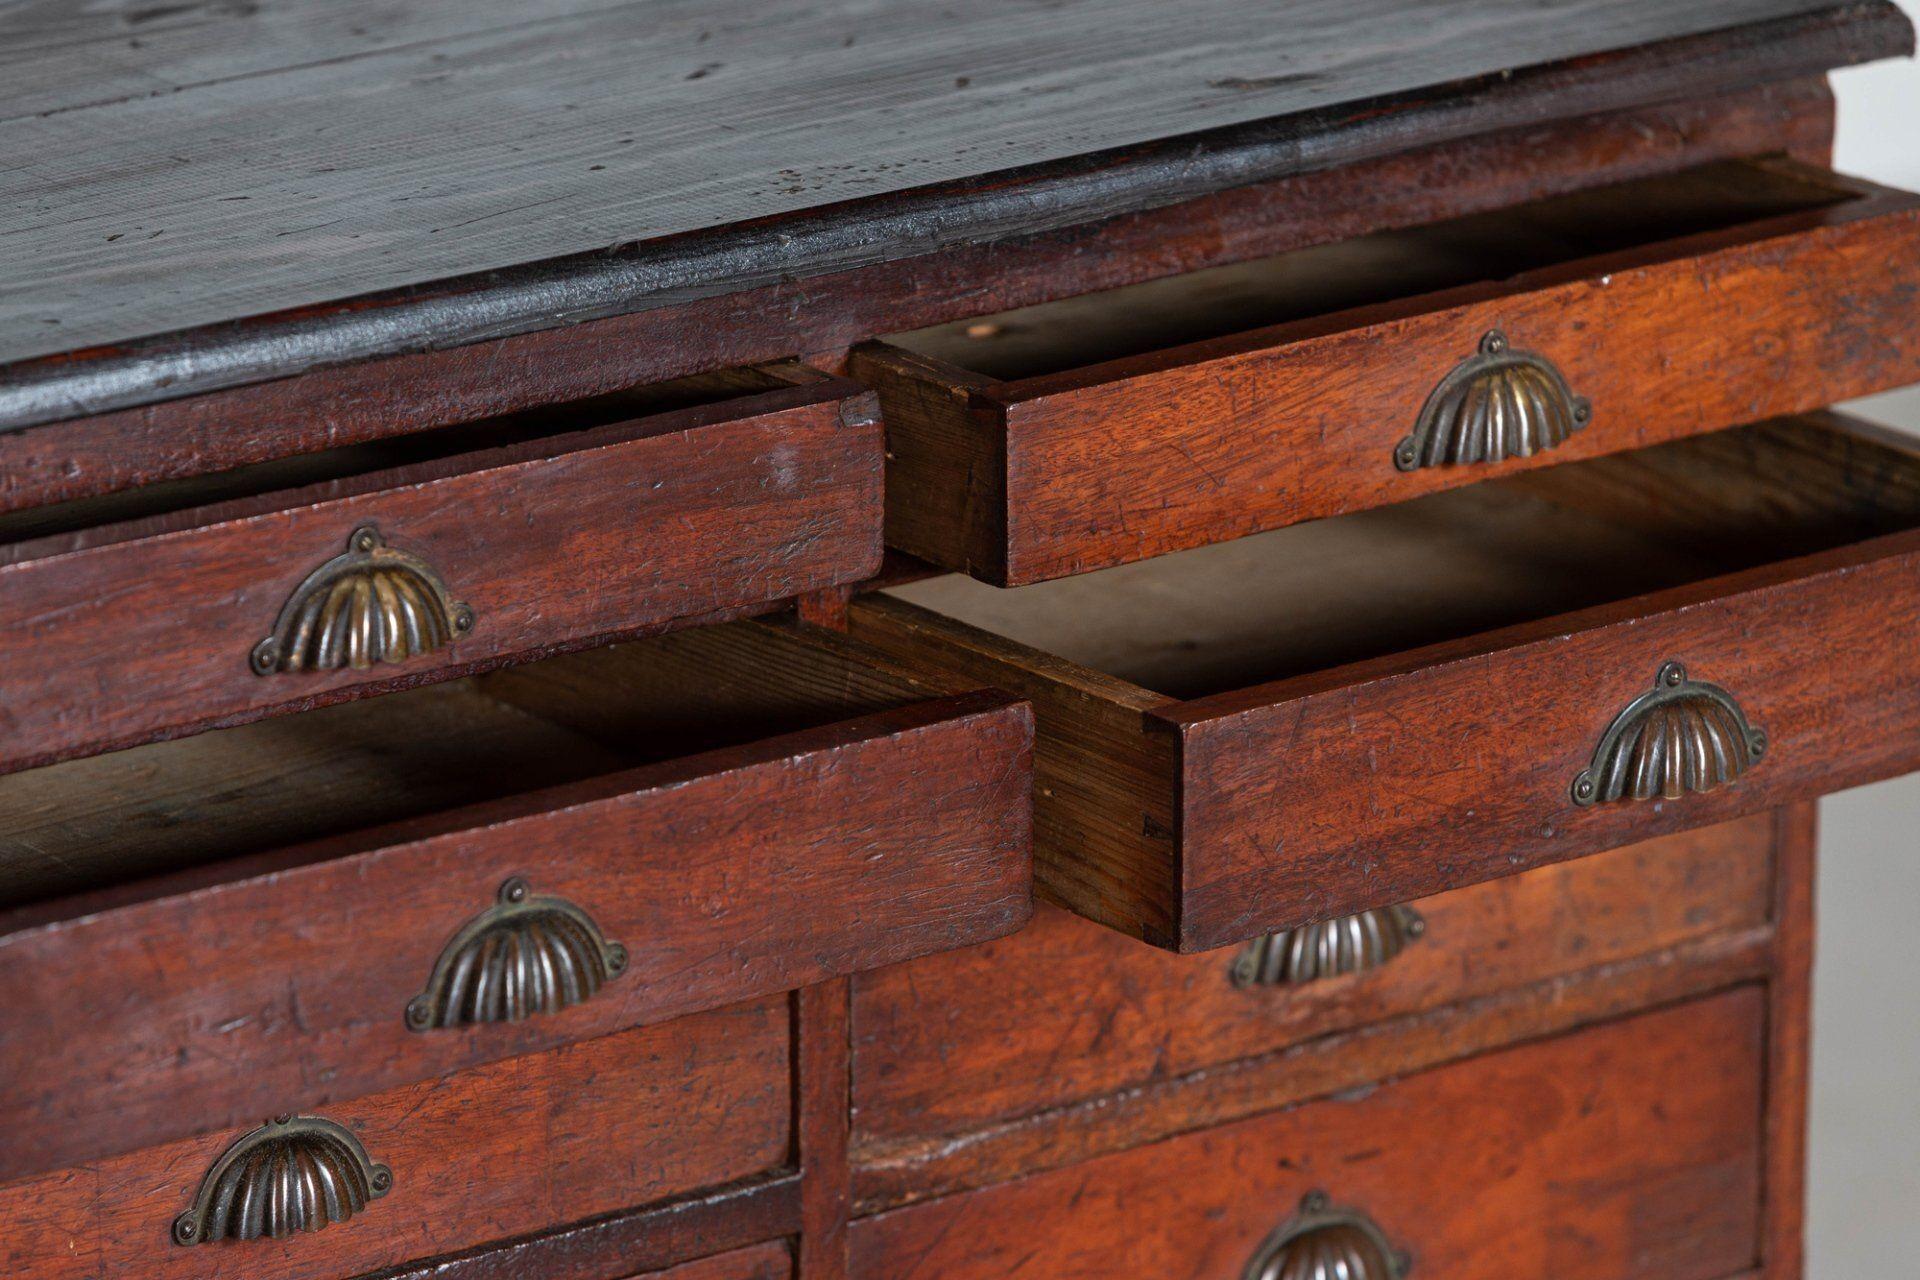 circa 1870
19thC English Mahogany & Pine Haberdashery drawers

Measures: W74 x D43 x H85 cm.